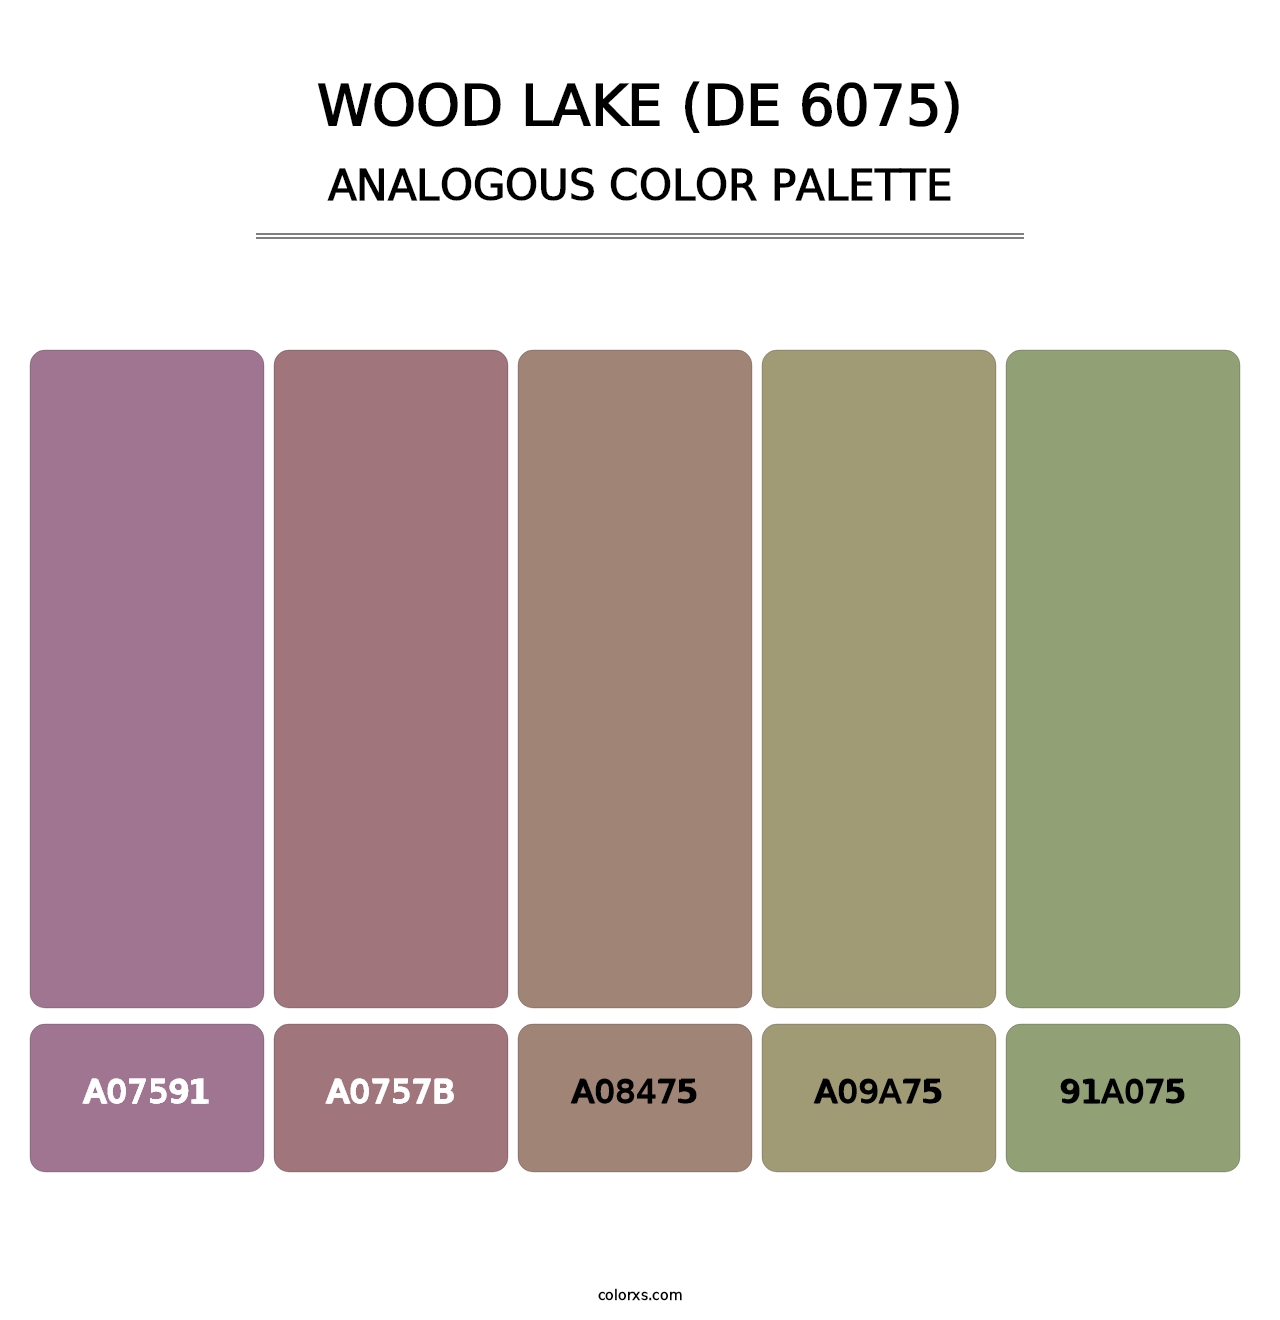 Wood Lake (DE 6075) - Analogous Color Palette